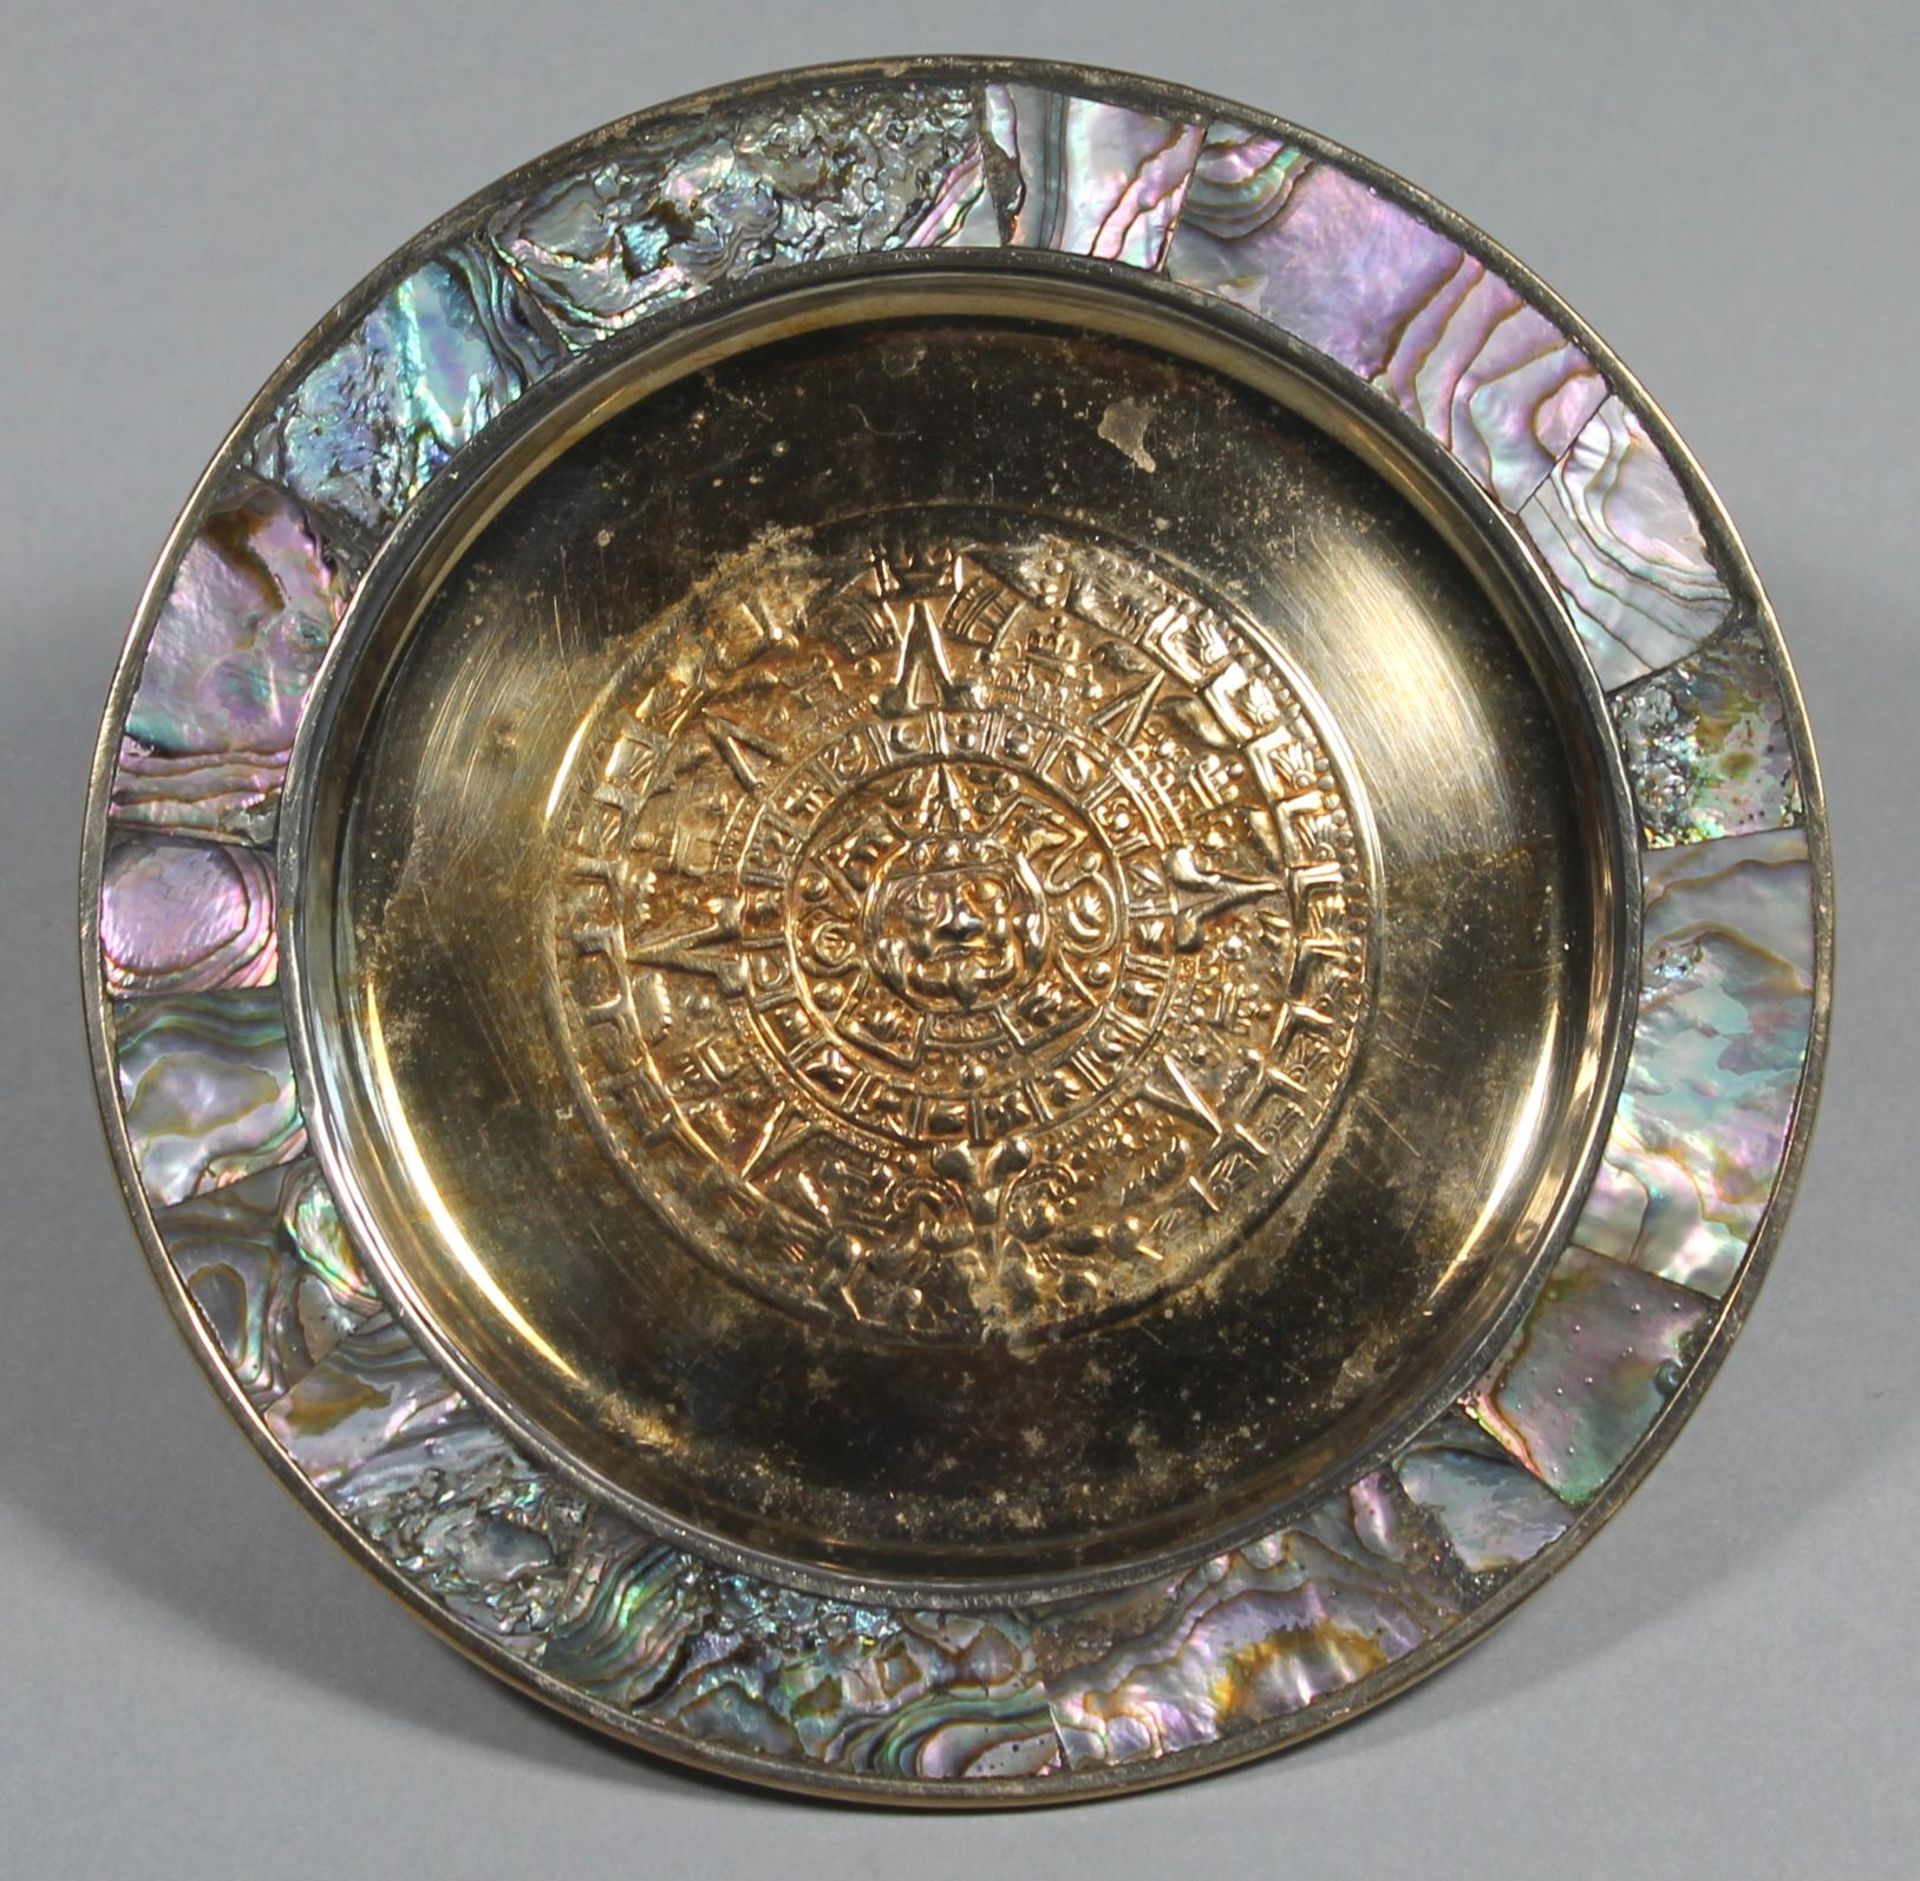 1 kleiner Wandteller Silber, Mexiko, Spiegel mit Reliefdekor, Rand mit Perlmutteinlagen, D ca. 16cm,